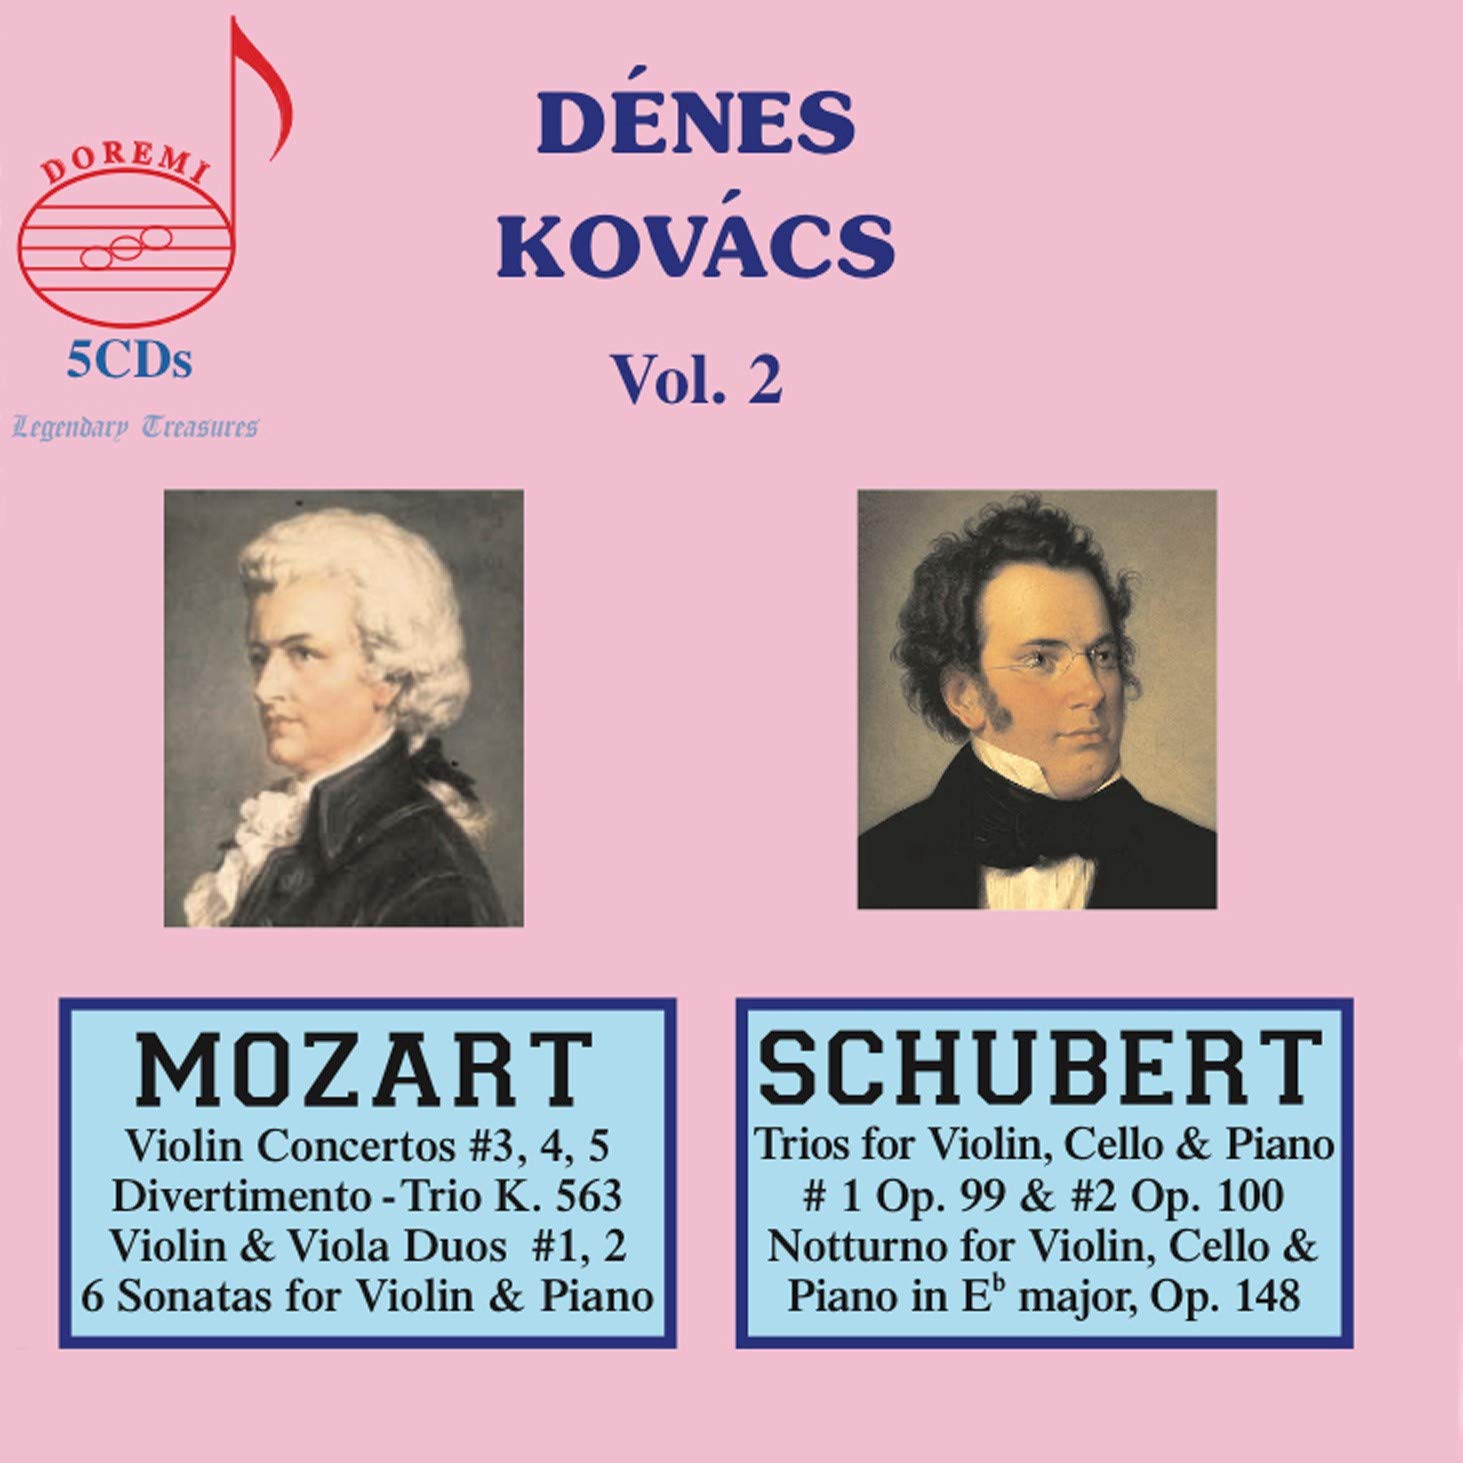 Audio Cd Denes Kovacs: Legendary Treasures Vol. 2 (5 Cd) NUOVO SIGILLATO, EDIZIONE DEL 26/08/2020 SUBITO DISPONIBILE